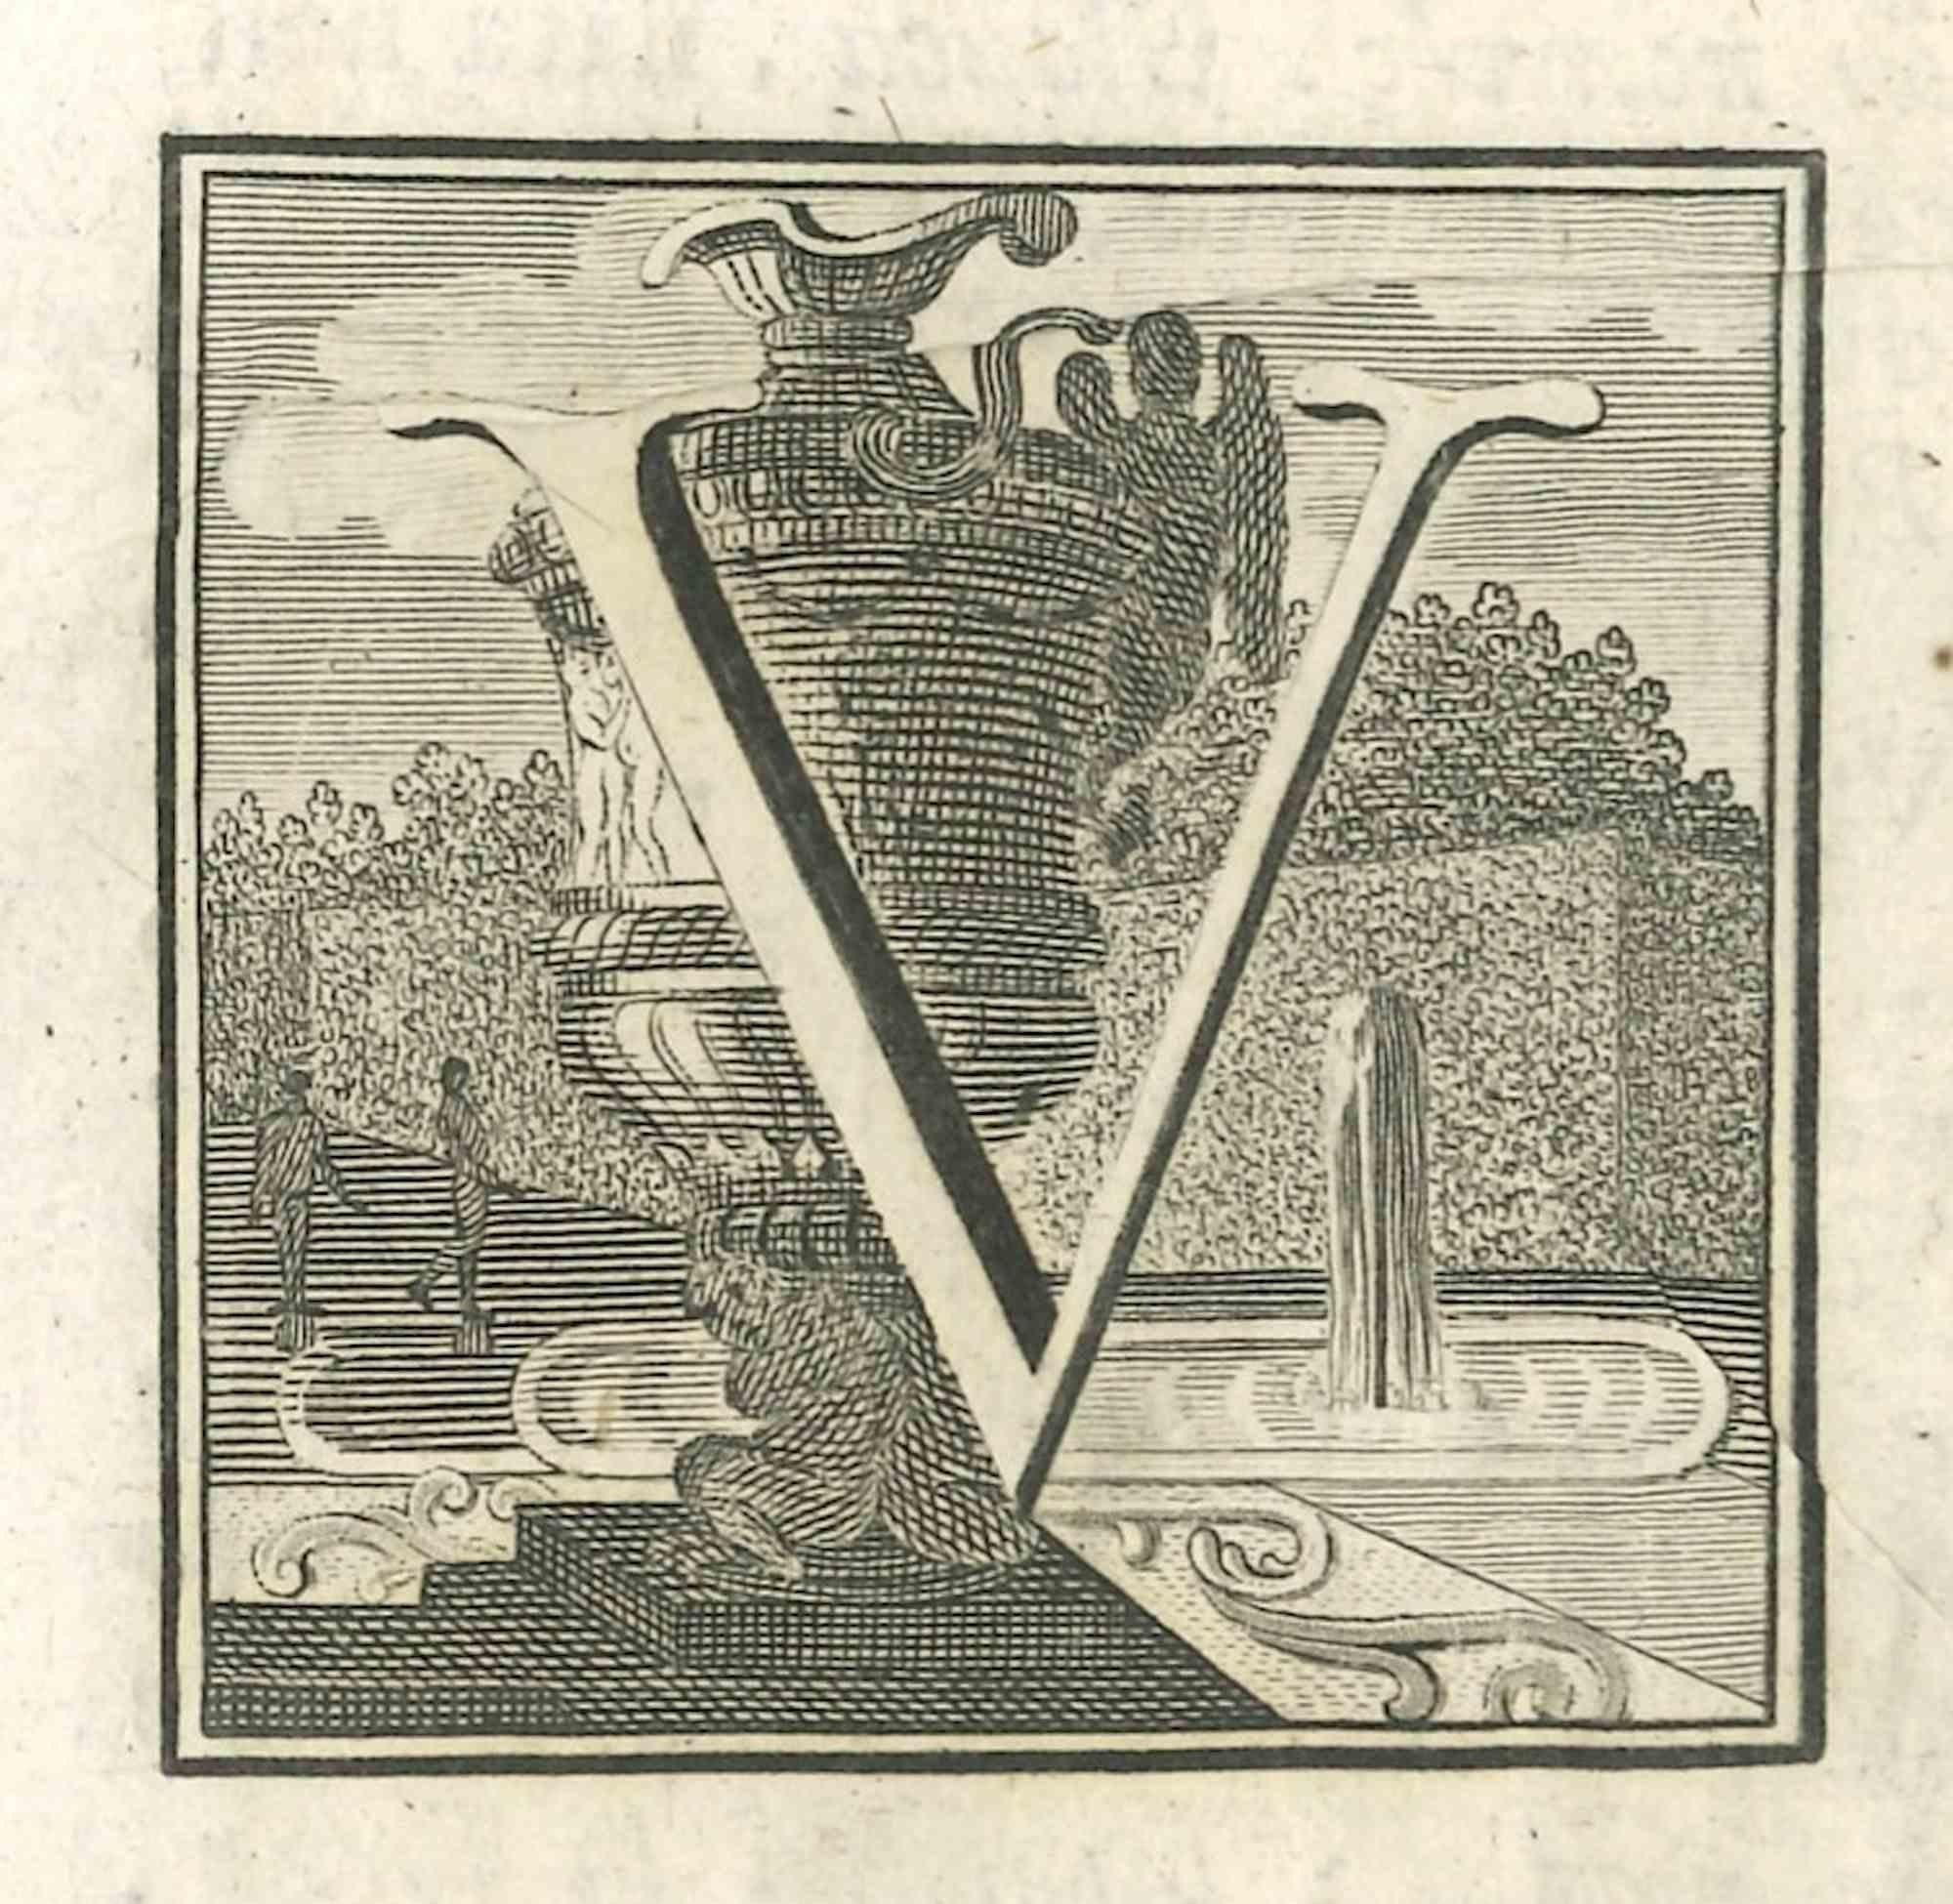 Lettre de l'alphabet V,  de la série "Antiquités d'Herculanum", est une gravure sur papier réalisée par divers auteurs au 18ème siècle.

Bonnes conditions.

La gravure appartient à la suite d'estampes "Antiquités d'Herculanum exposées" (titre